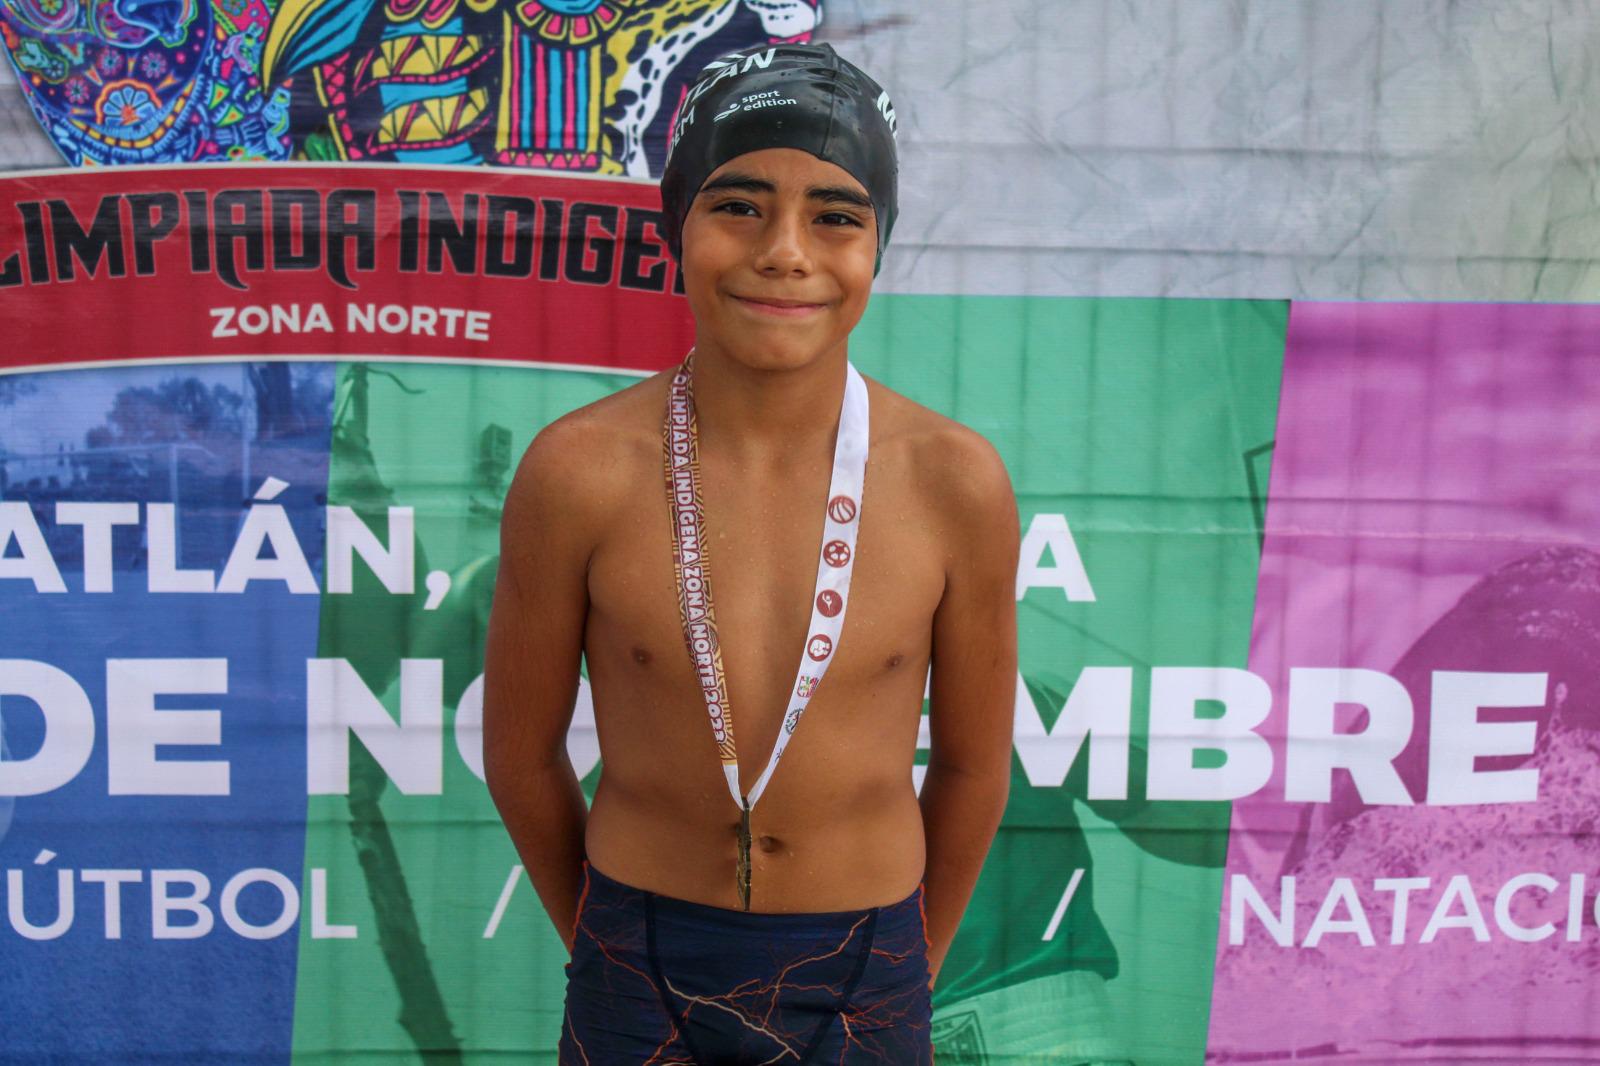 $!Tritones mazatlecos toman parte de Olimpiada Indígena Zona Norte